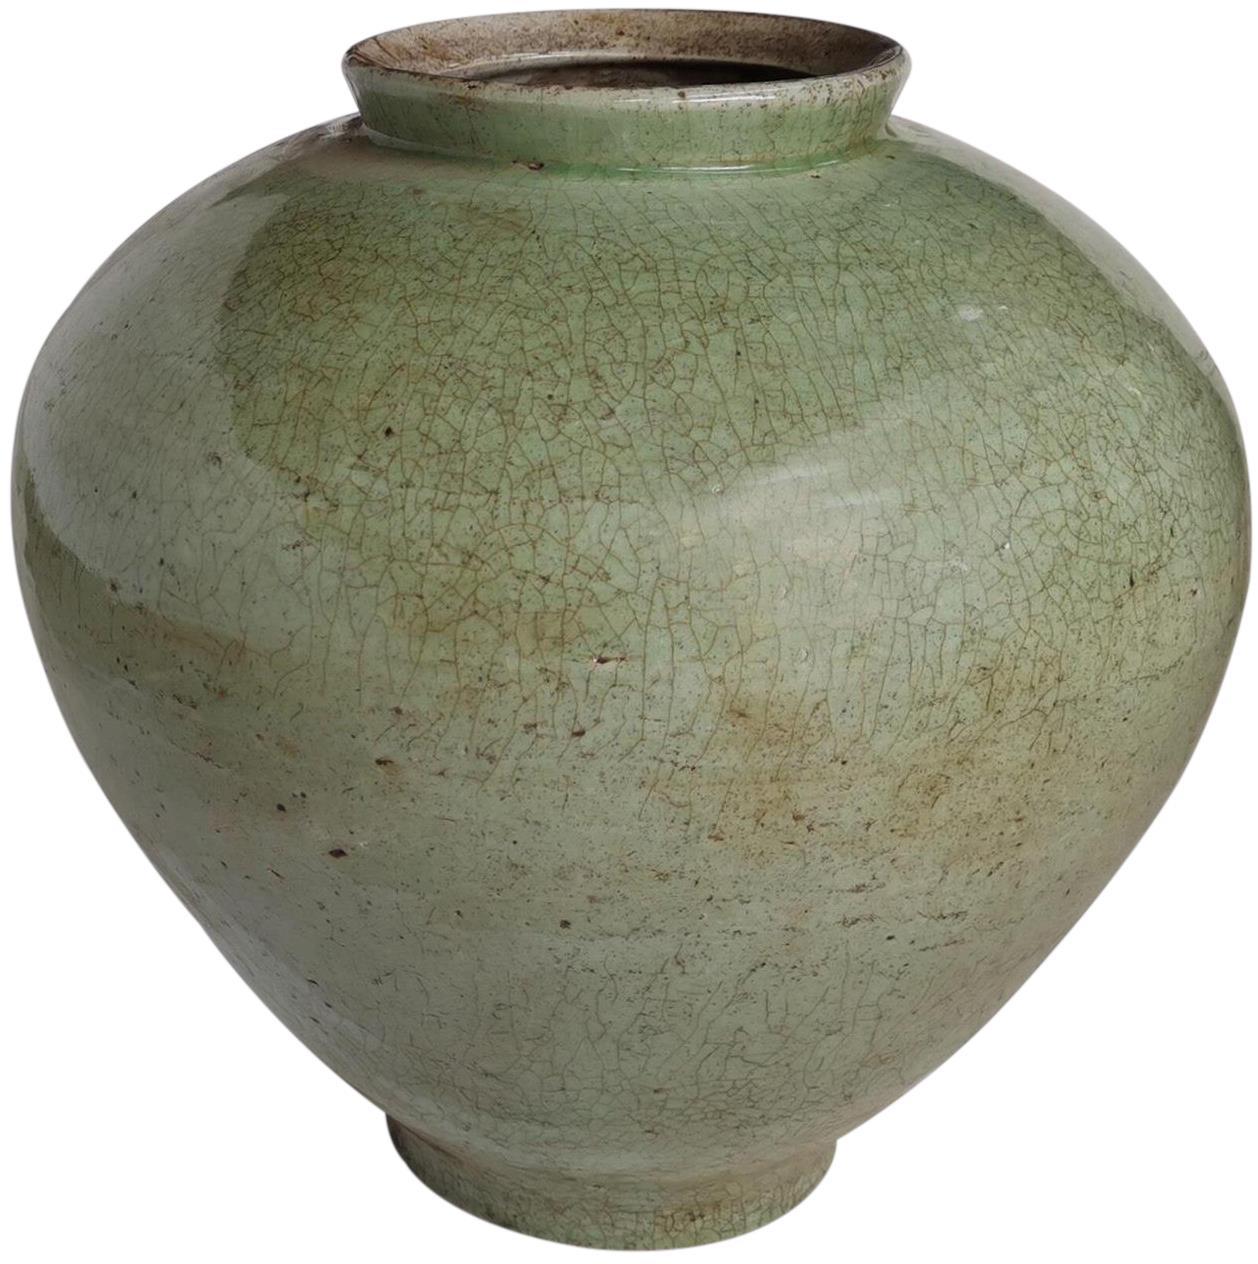 Jar Vase Cone Large Celadon Crackled Green Ceramic Handmade Hand-Cr-Image 1